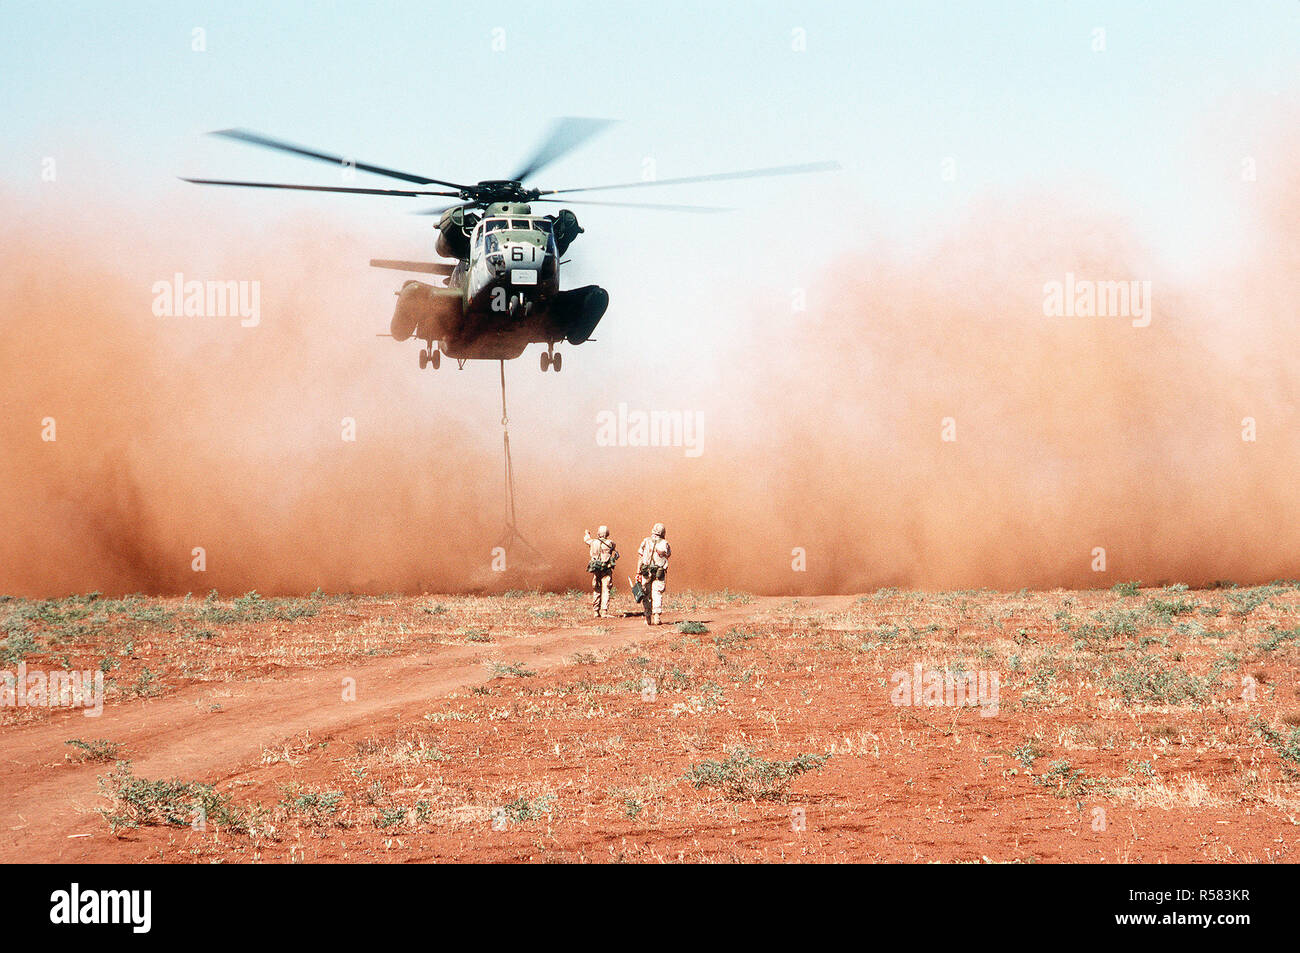 Un escadron d'hélicoptères lourds Marine 363 (HMH-363) CH-53D Sea Stallion helicopter offre un chargement de grain à un champ à la sortie du village d'Maleel au cours de l'effort de secours multinationales l'opération RESTORE HOPE. Le grain, donnés par l'Australie, est piloté dans au lieu de driven parce qu'il est soupçonné que les connaissements des routes du village ont été exploités. Banque D'Images